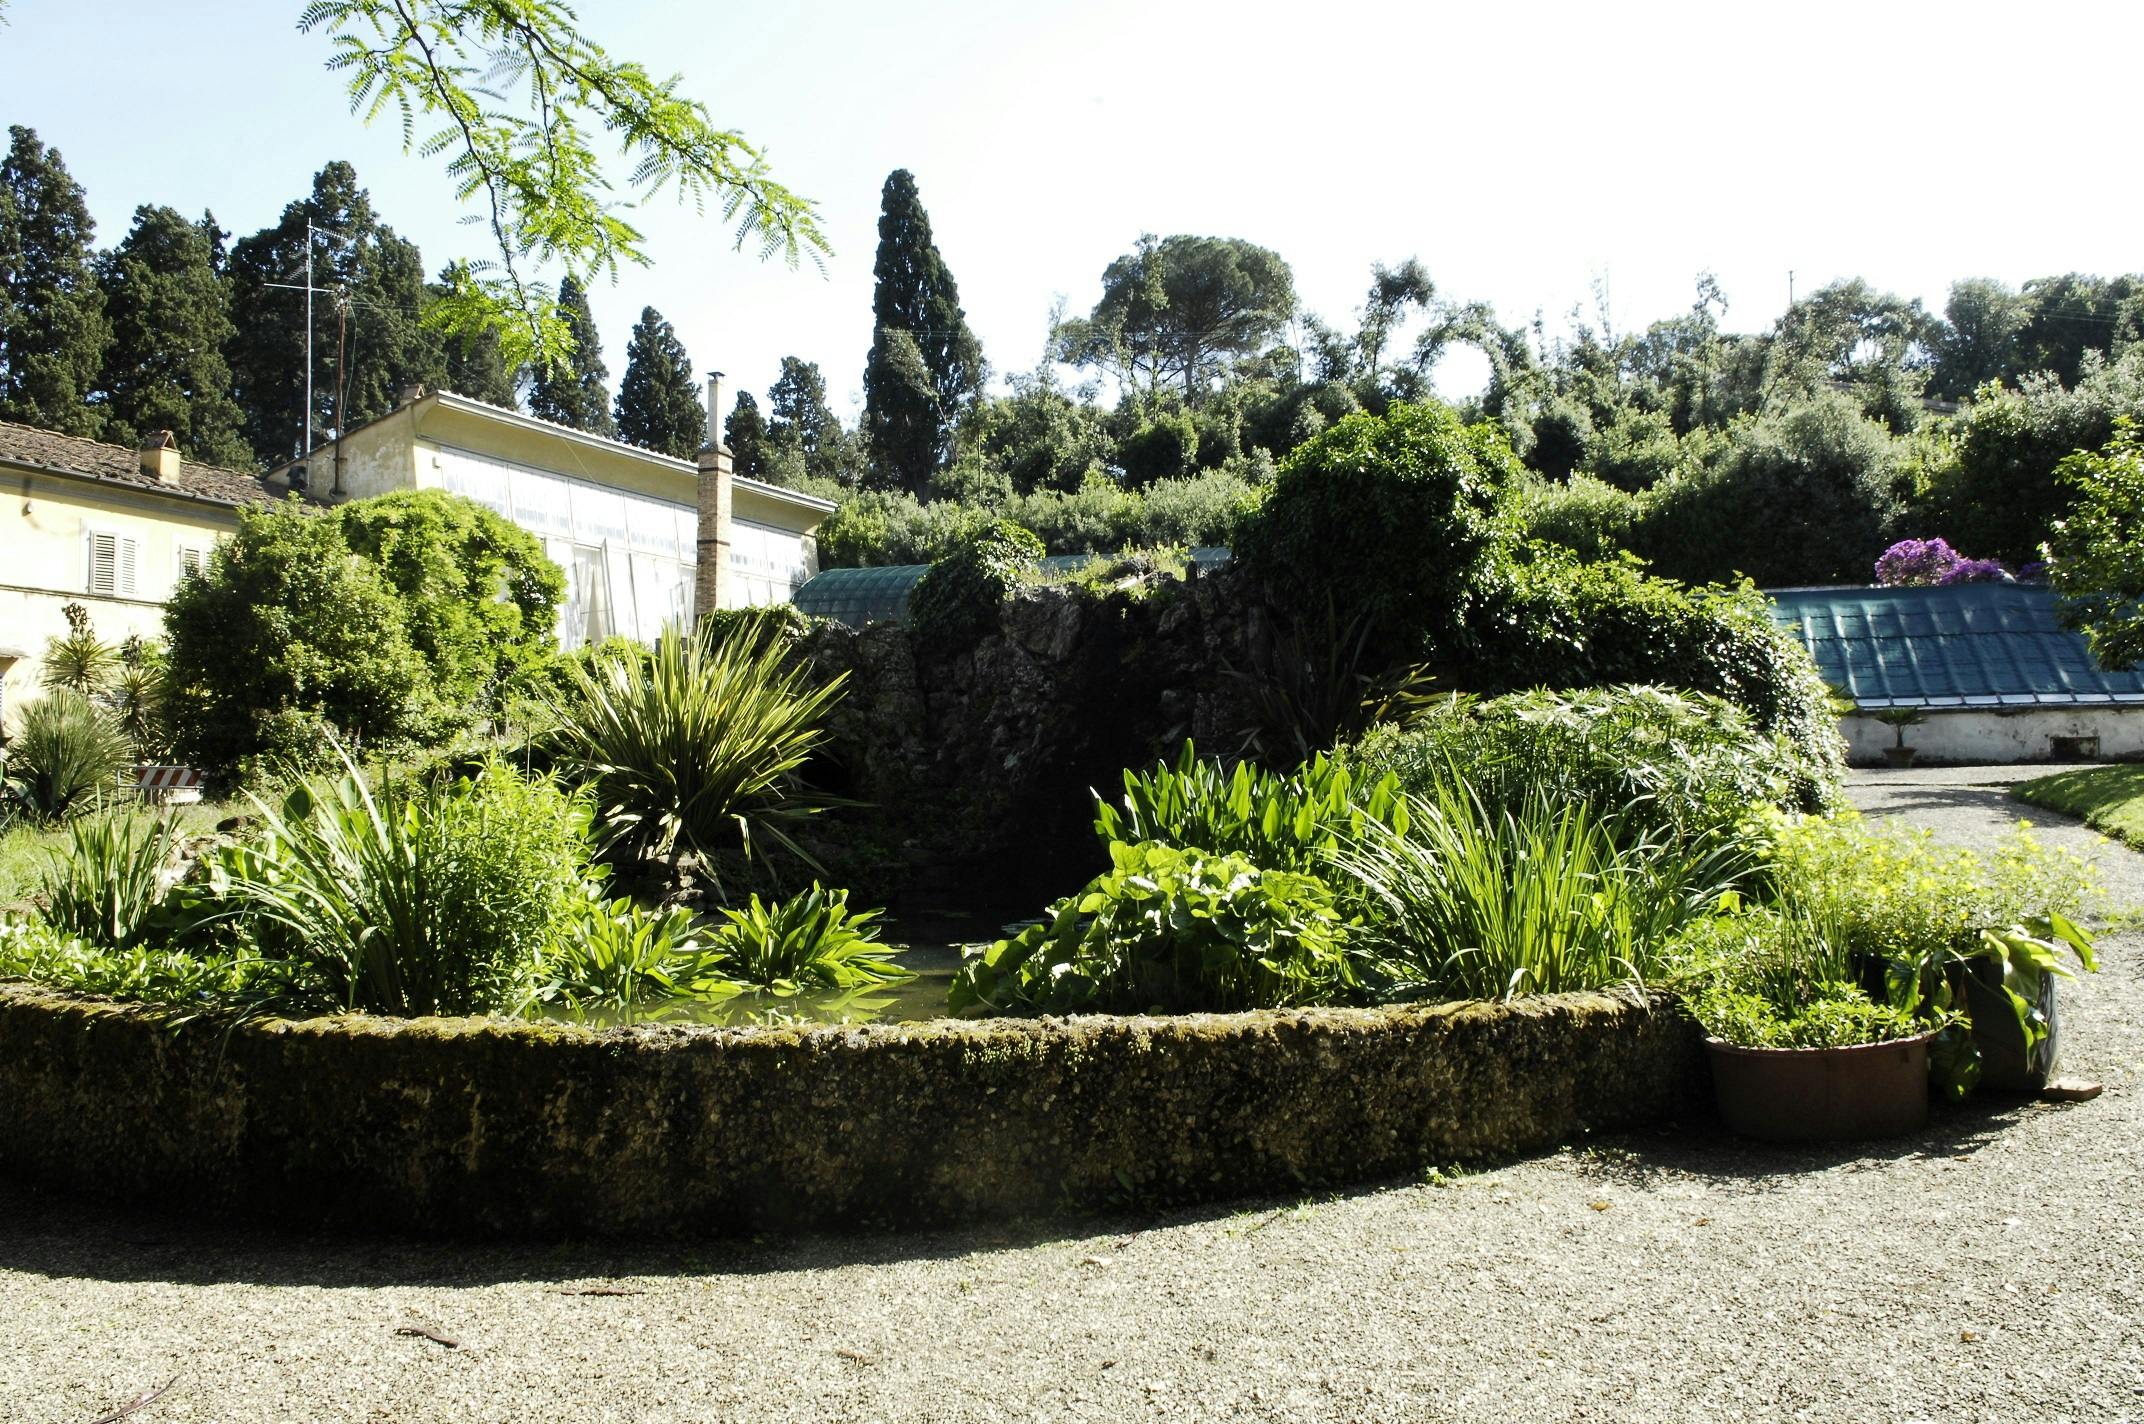 Coming soon in the Boboli Gardens, the 'Garden of the Senses'